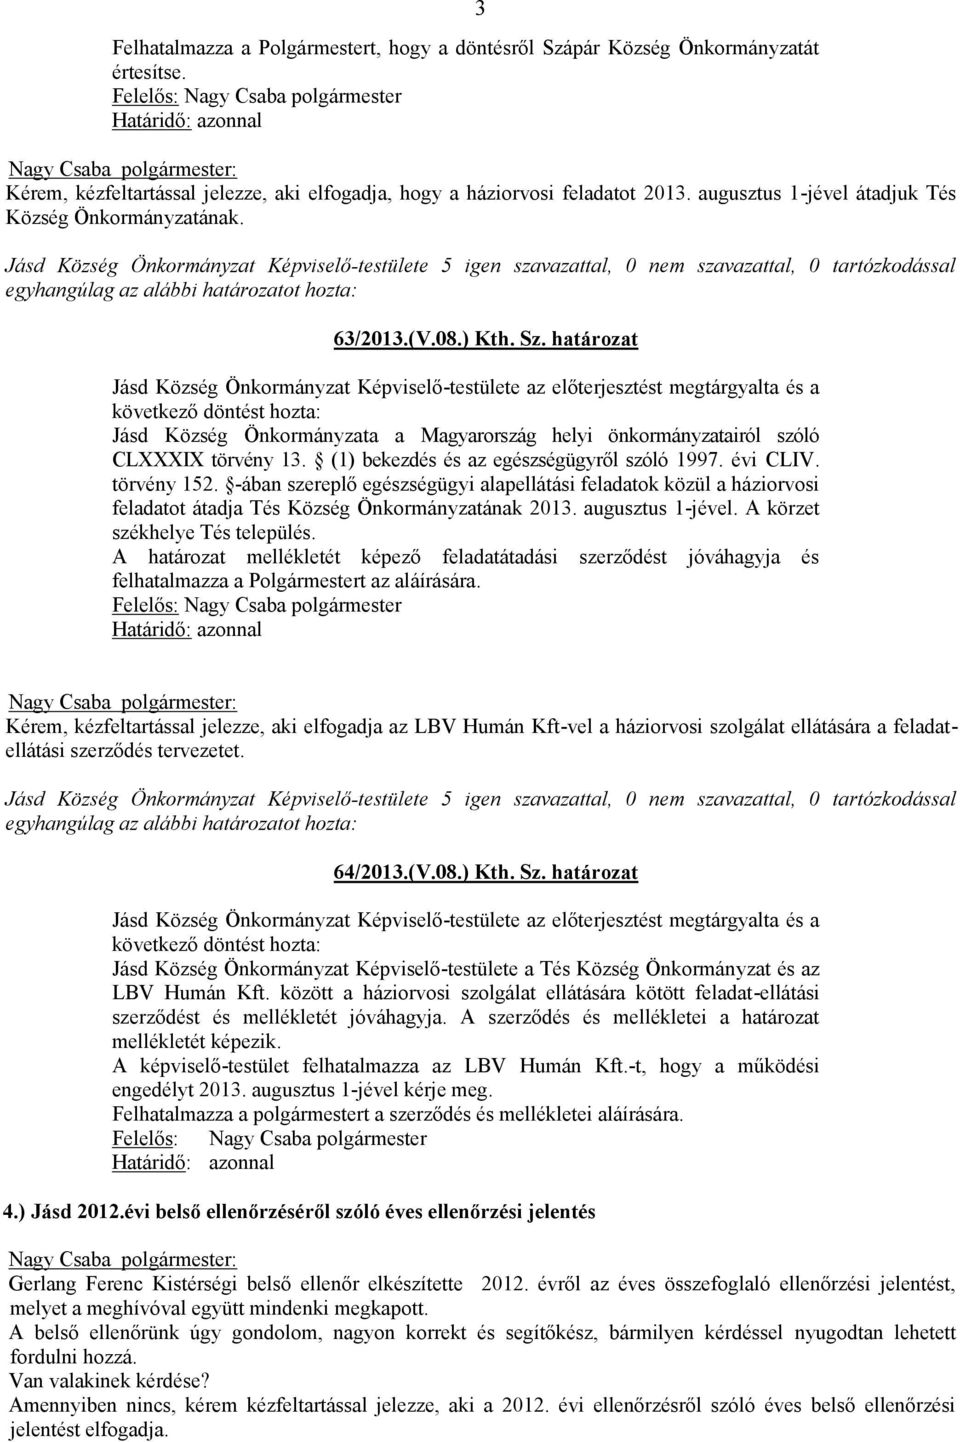 határozat Jásd Község Önkormányzat Képviselő-testülete az előterjesztést megtárgyalta és a következő döntést hozta: Jásd Község Önkormányzata a Magyarország helyi önkormányzatairól szóló CLXXXIX